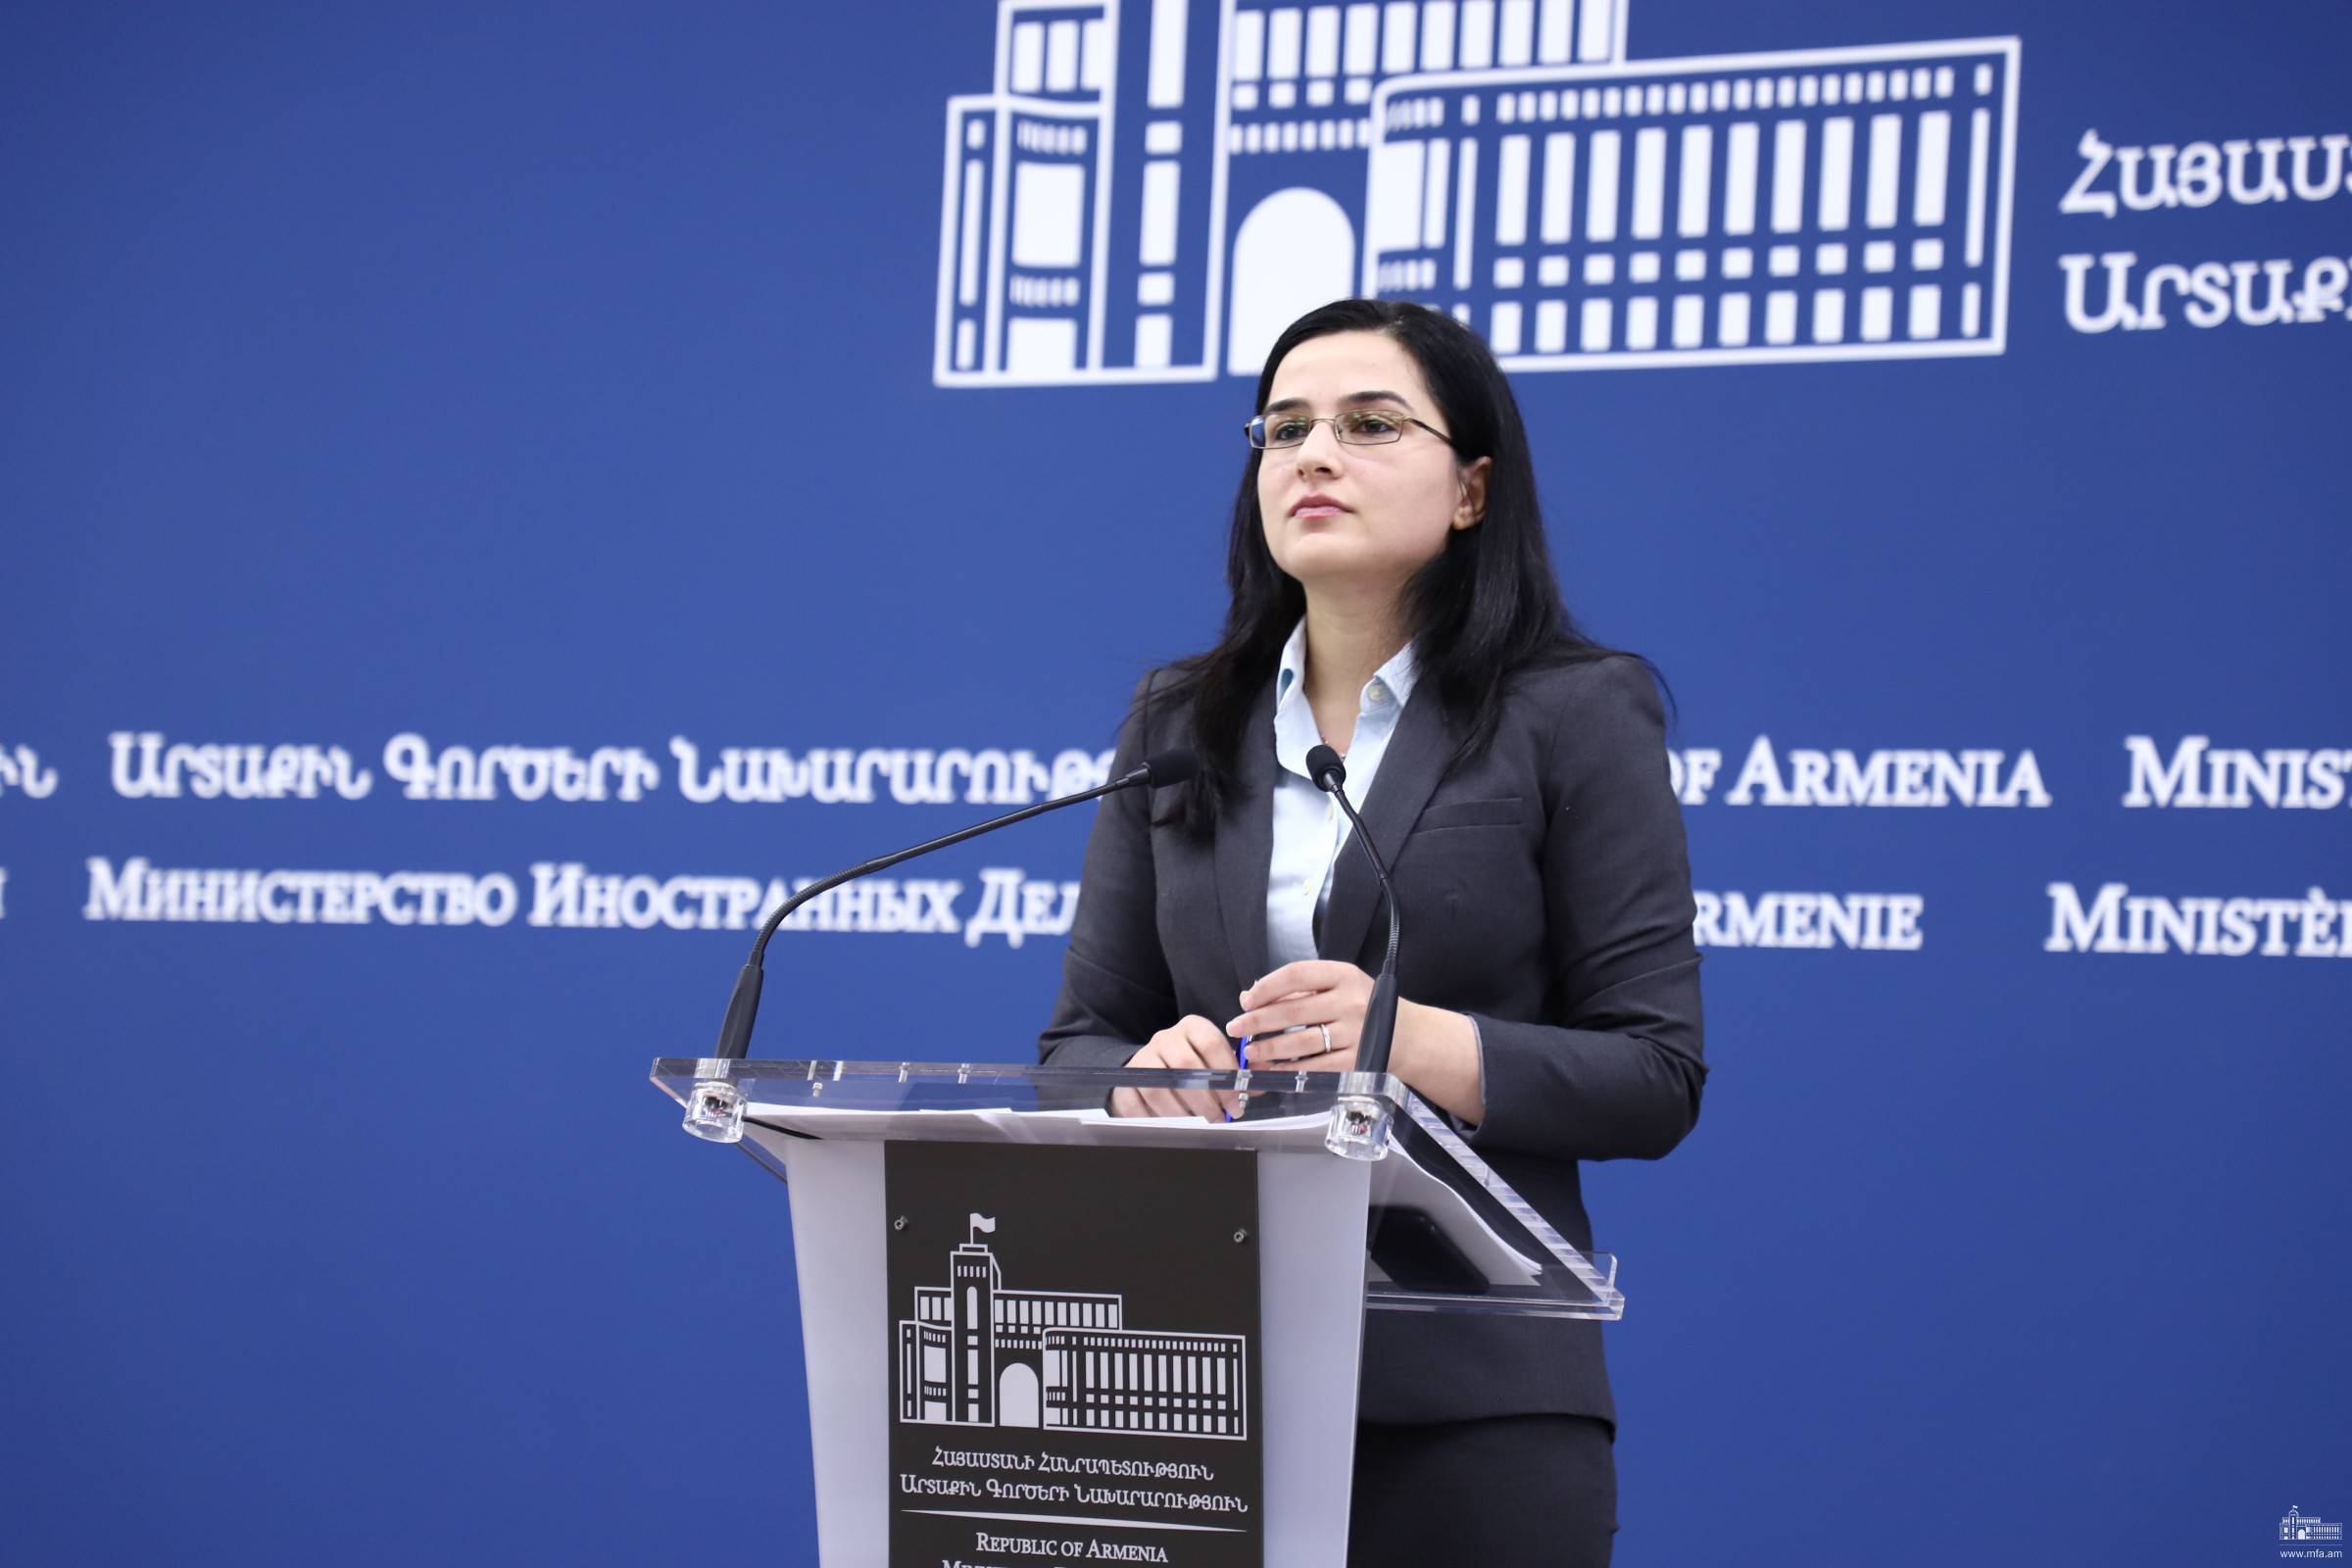 МИД Армении: народ Арцаха не участвовал в выборах Азербайджана ни сейчас, ни на протяжении всей истории Республики Азербайджана